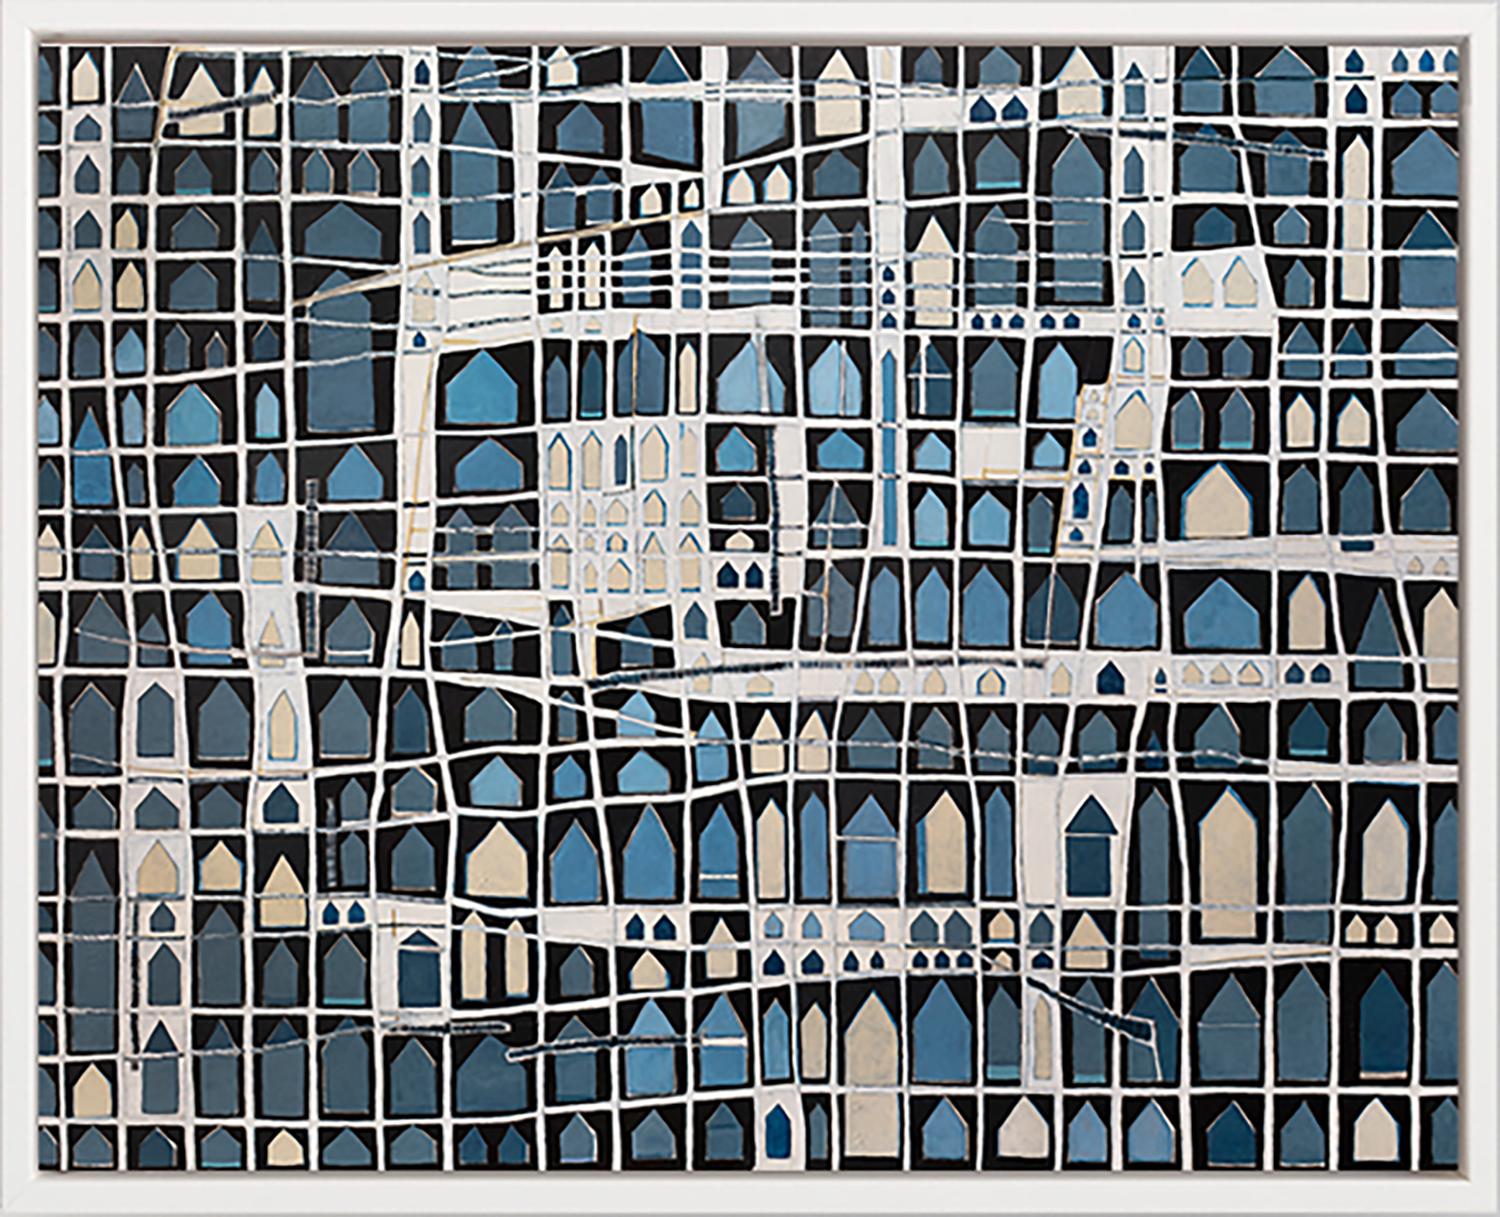 Abstract Print Sofie Swann - "Neighbors,"" Impression giclée en édition limitée, 101,6 x 121,9 cm